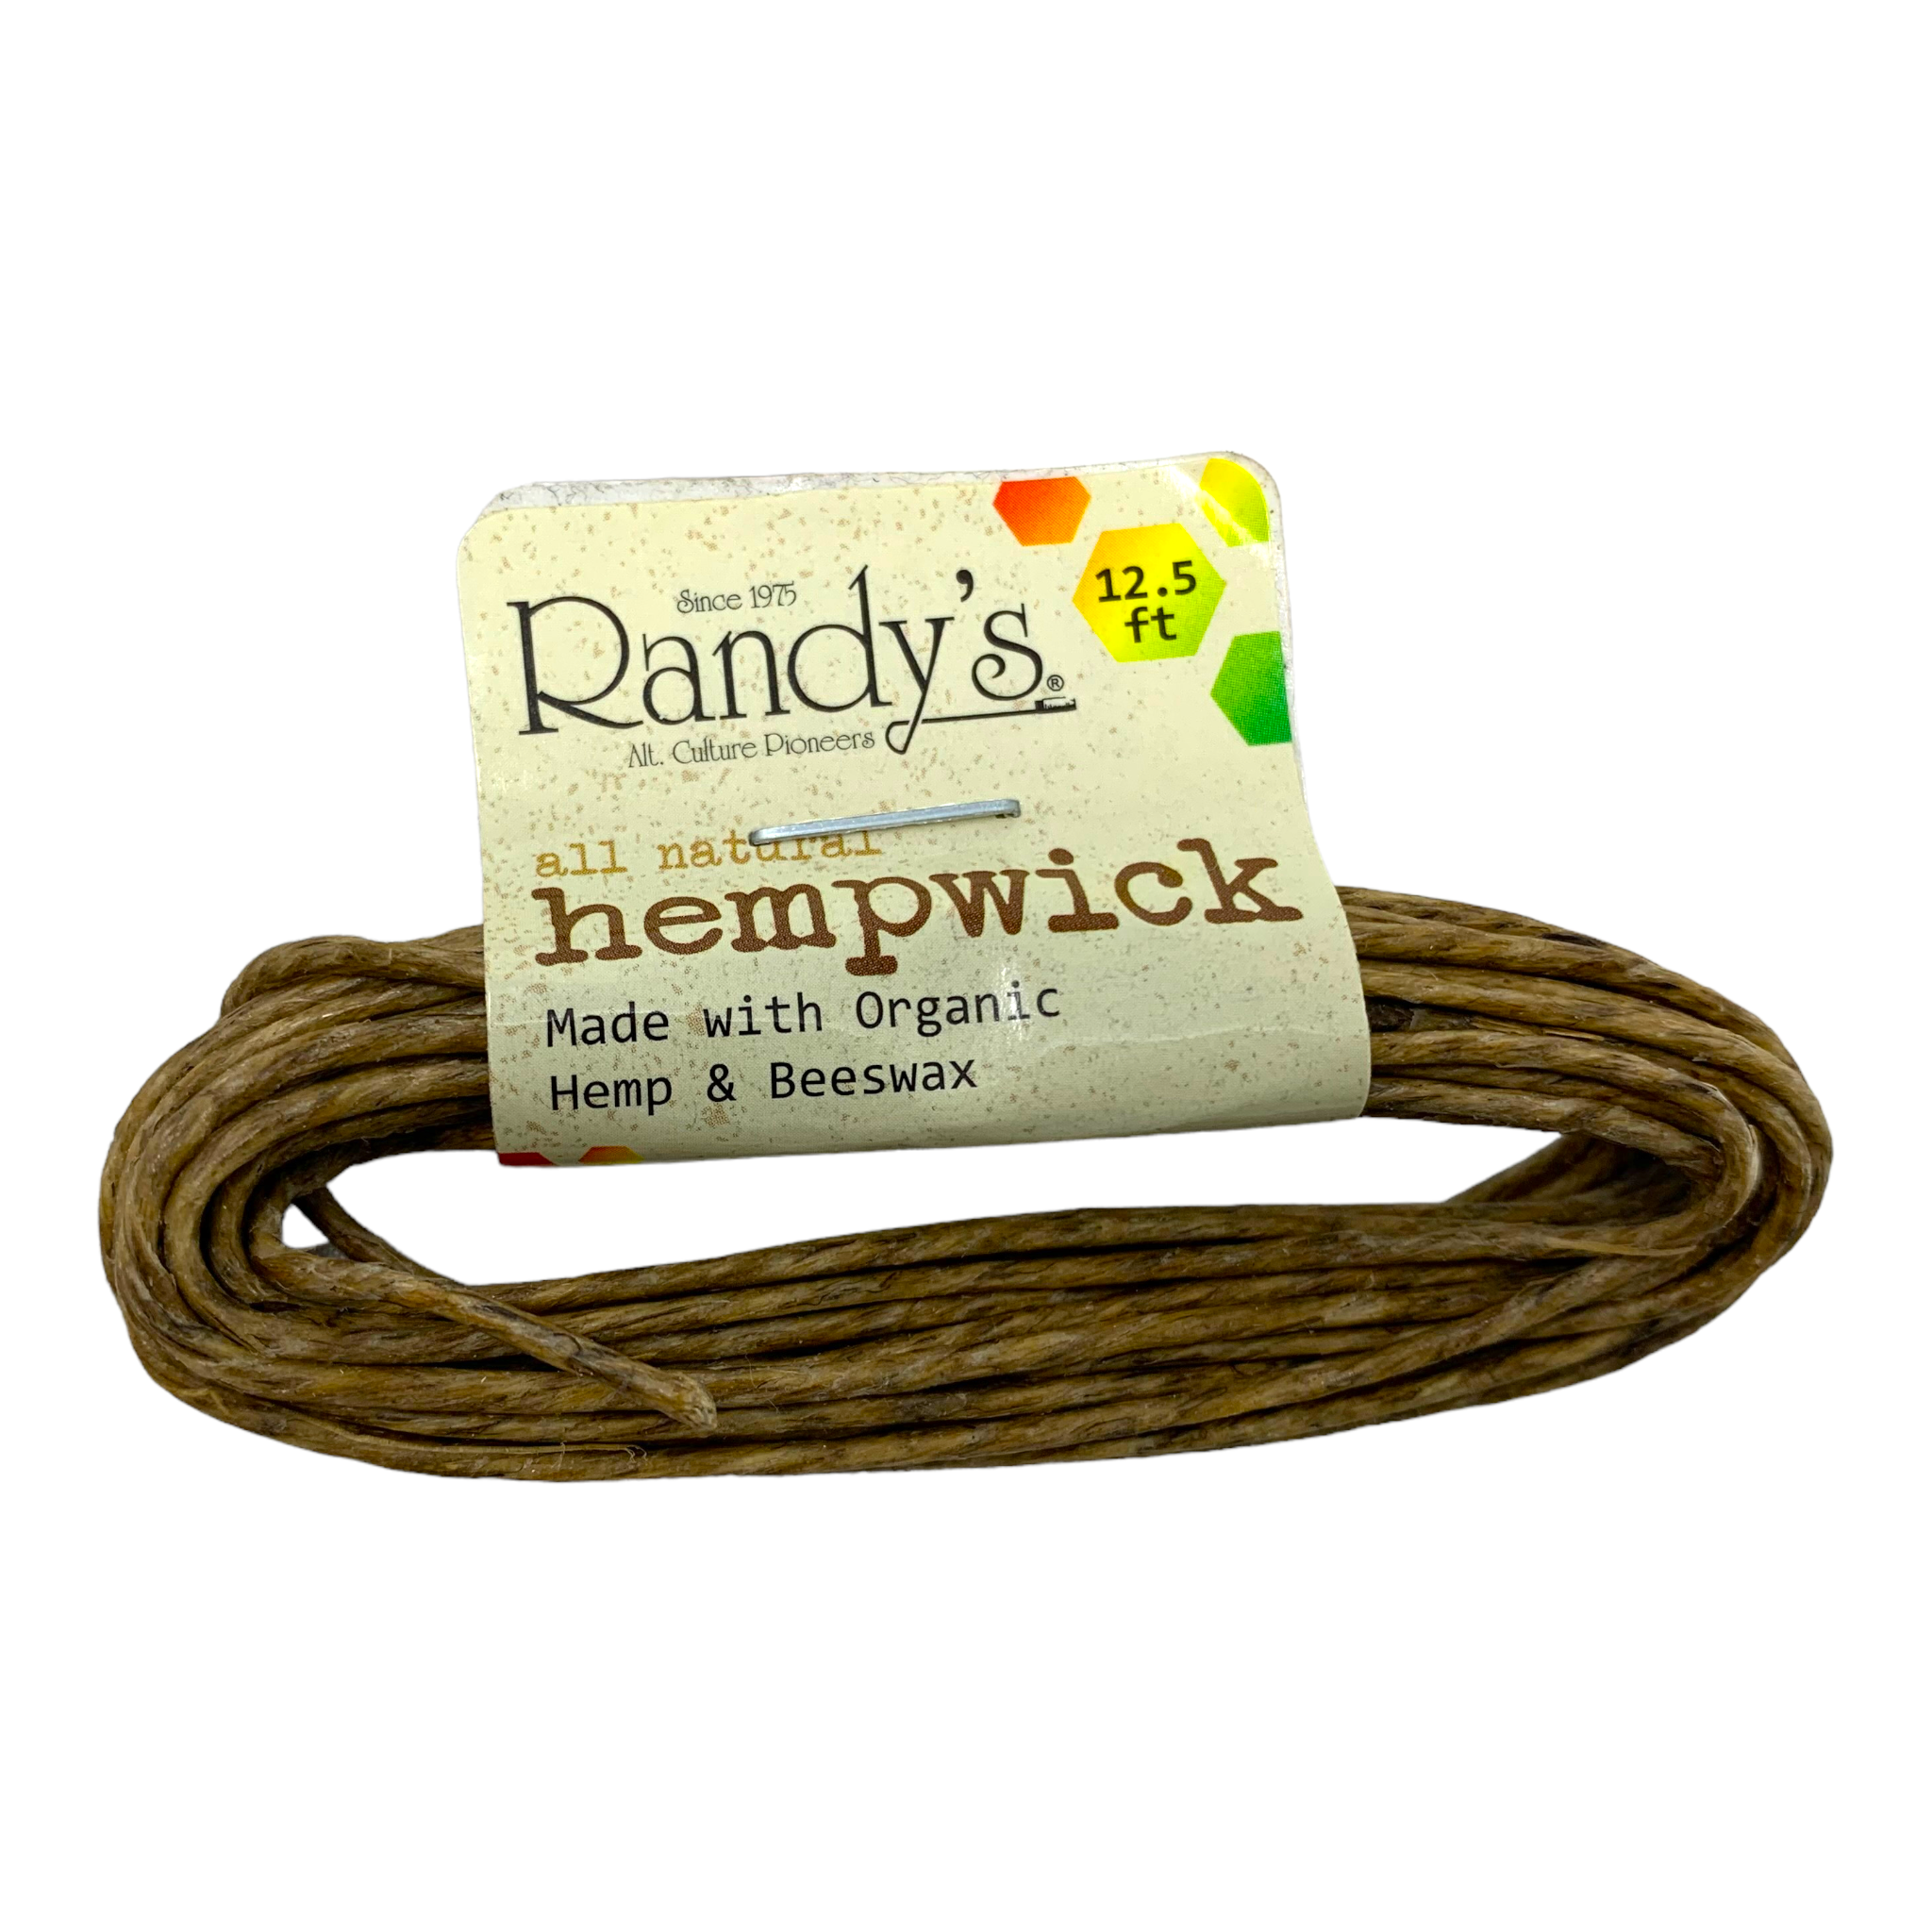 Hempwick totalmente natural de Randy